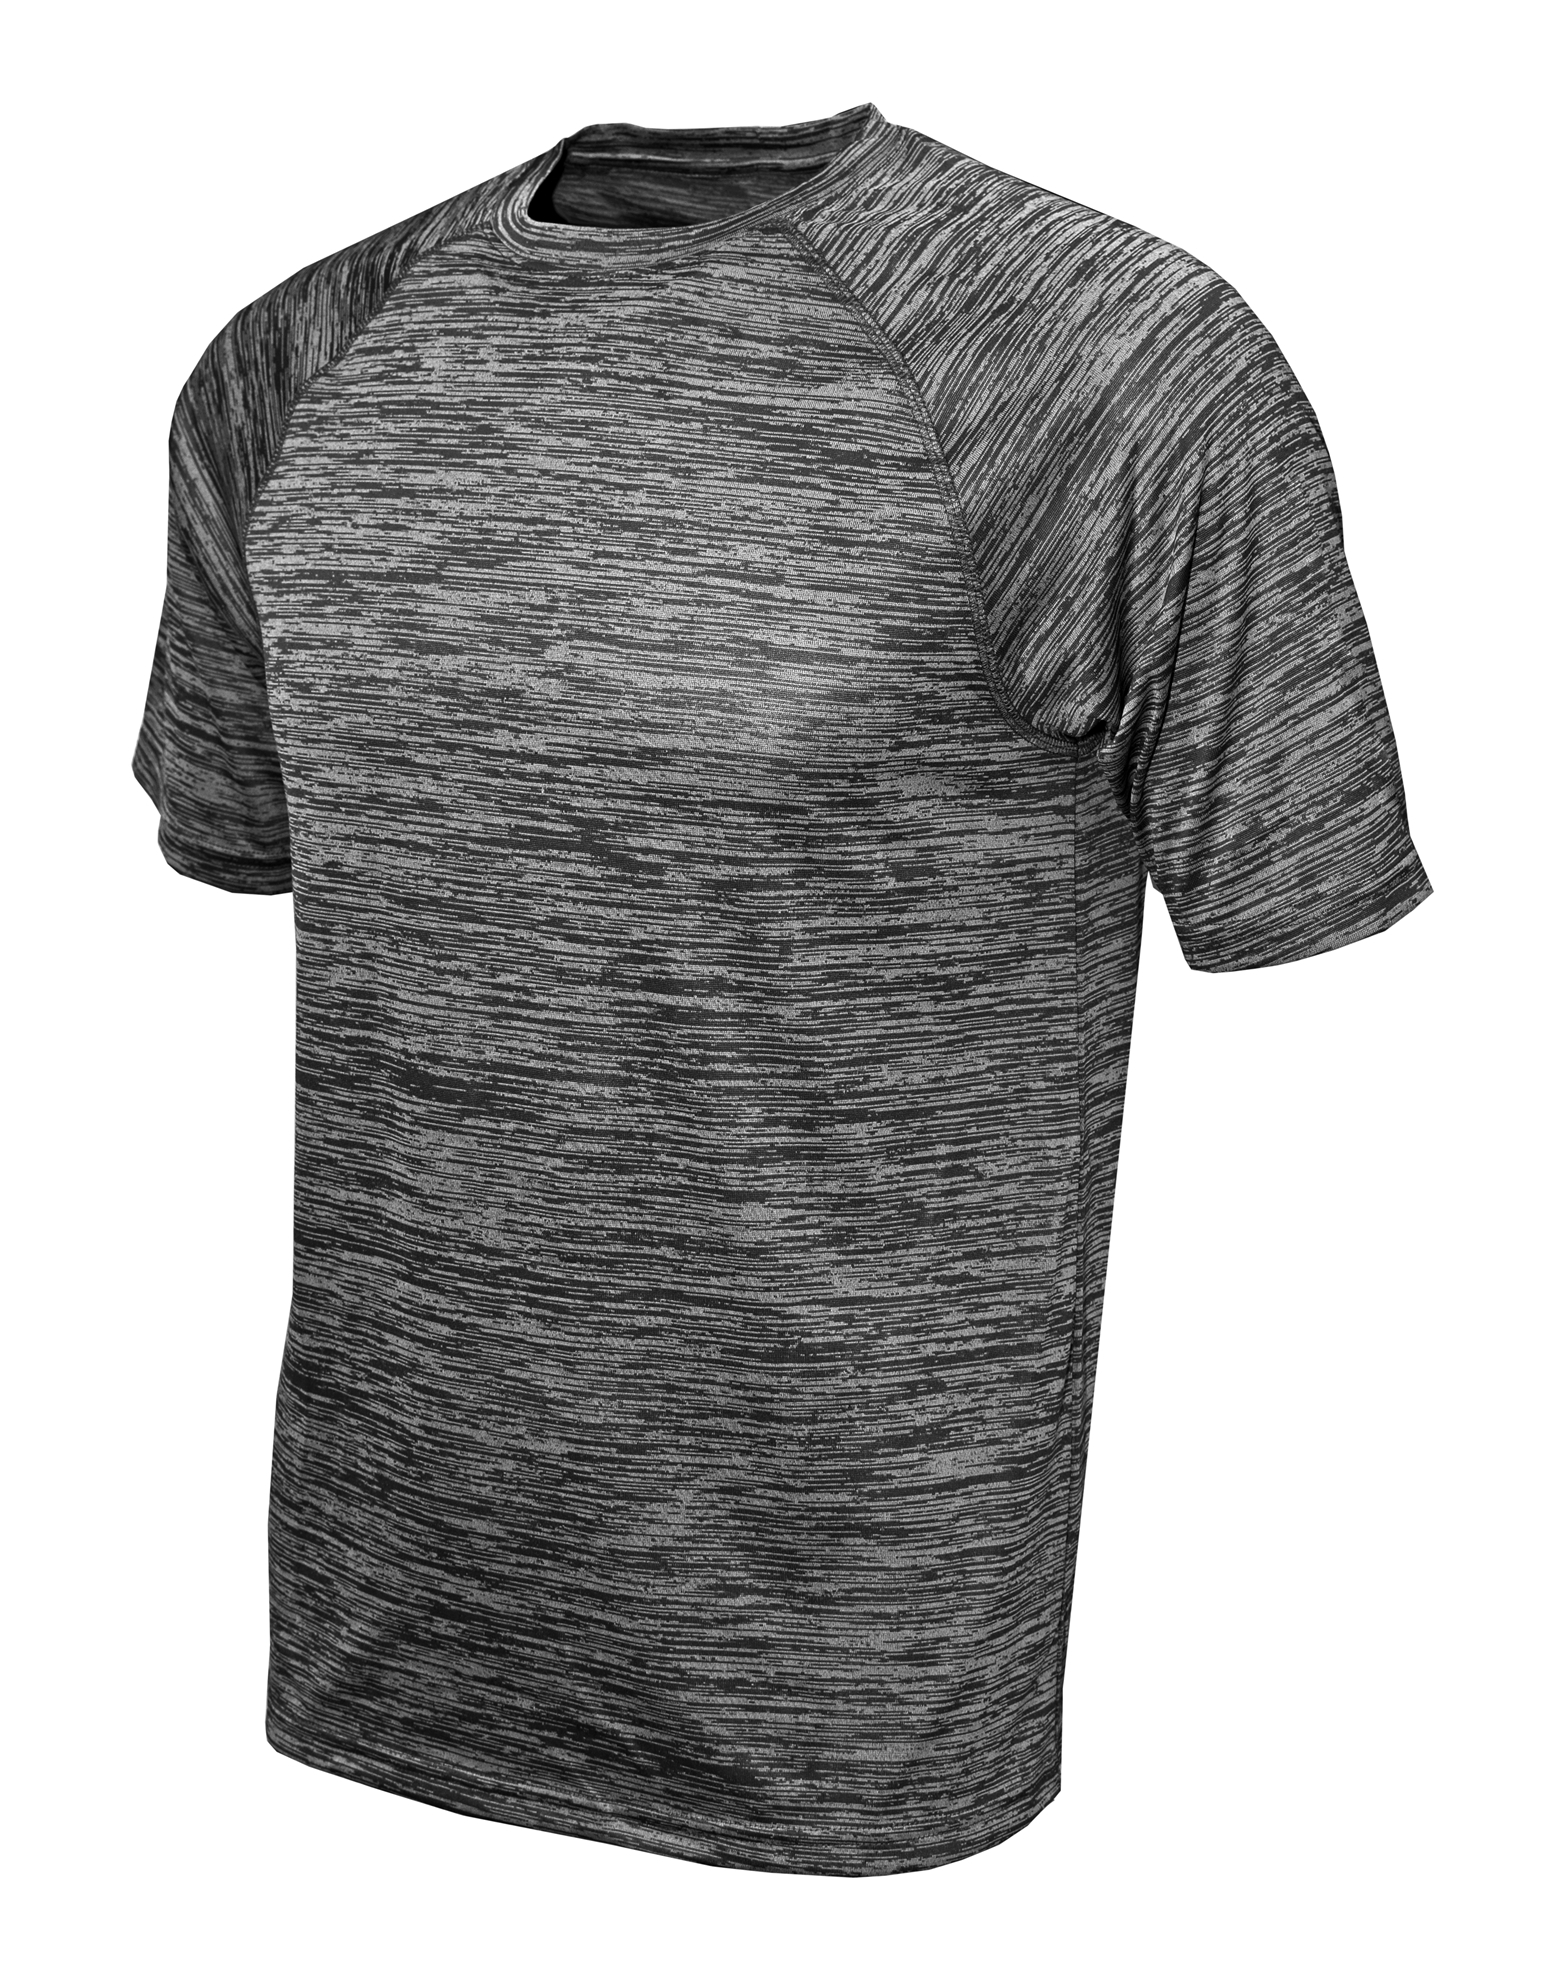 BAW Athletic Wear DT56Y - Youth Dry-Tek T-Shirt